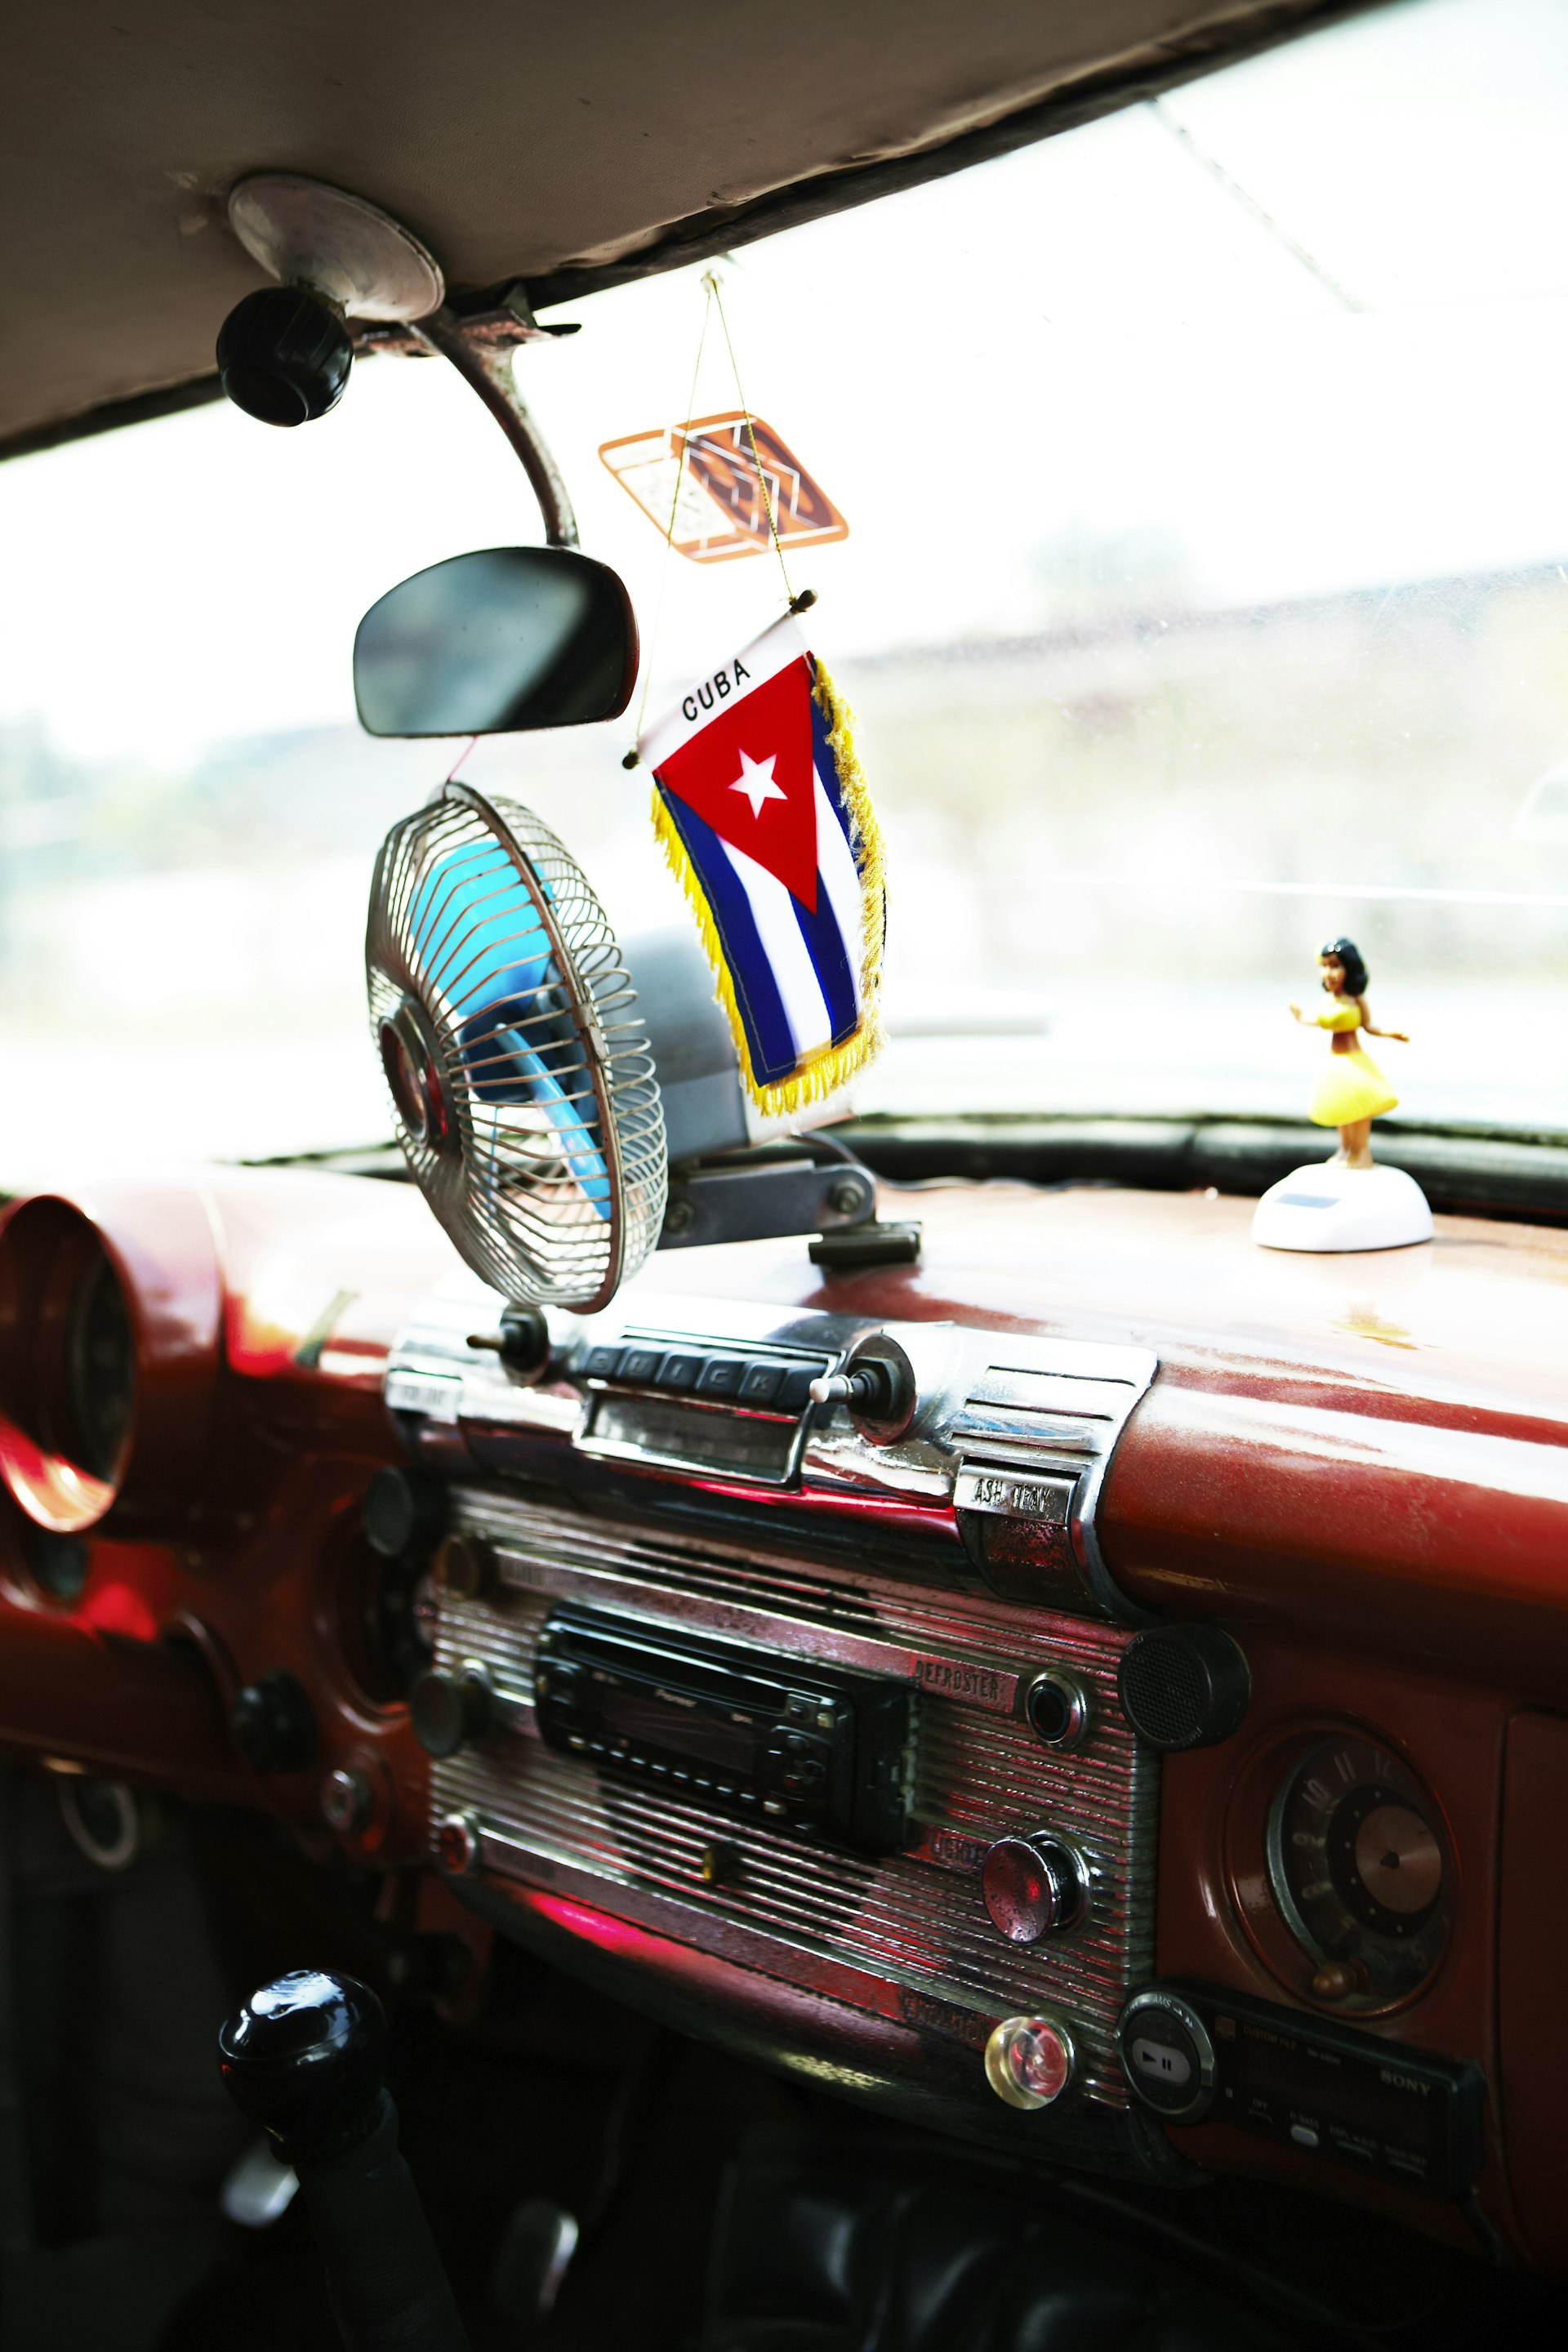 Interior of vintage American car. 